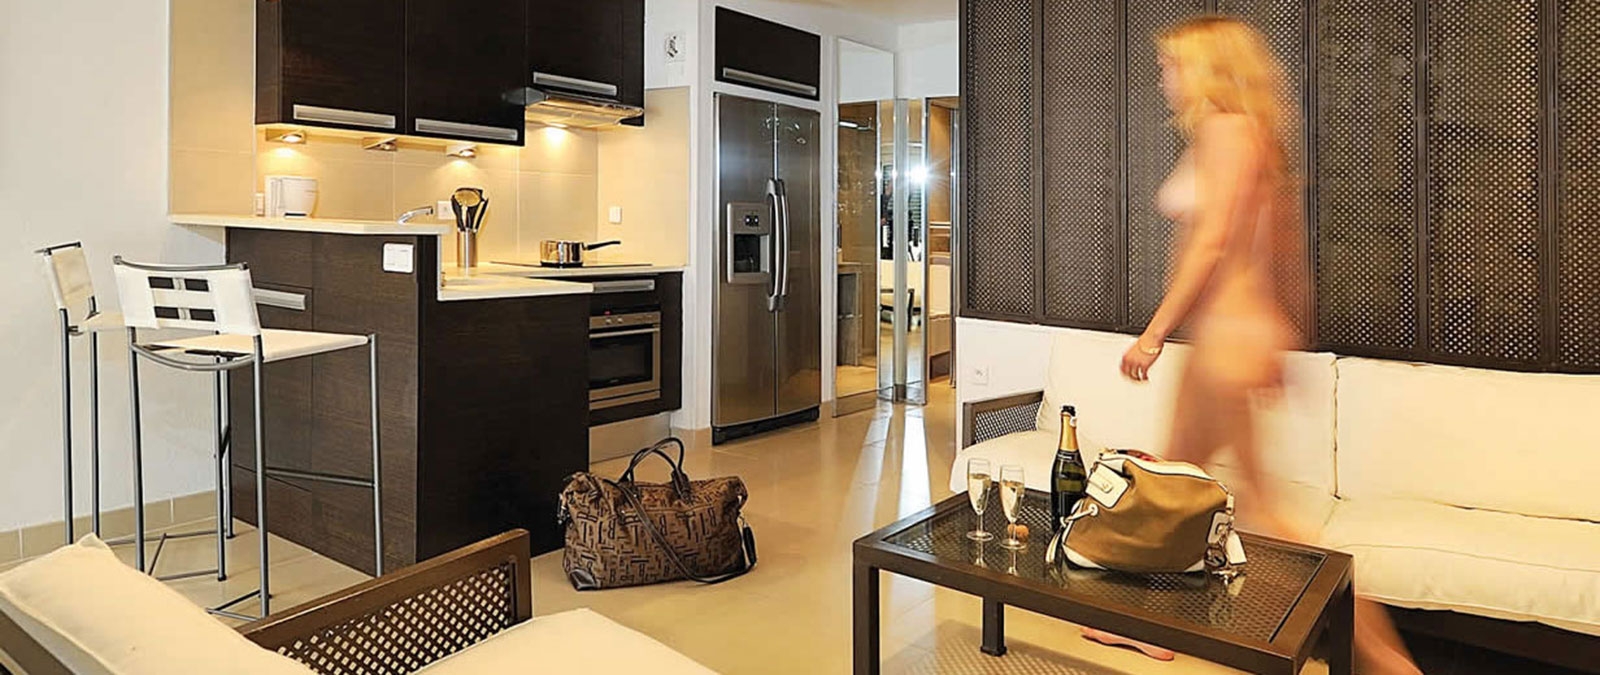 Swinger-Apartmenthaus Acapulco mit voll ausgestatteter Küche